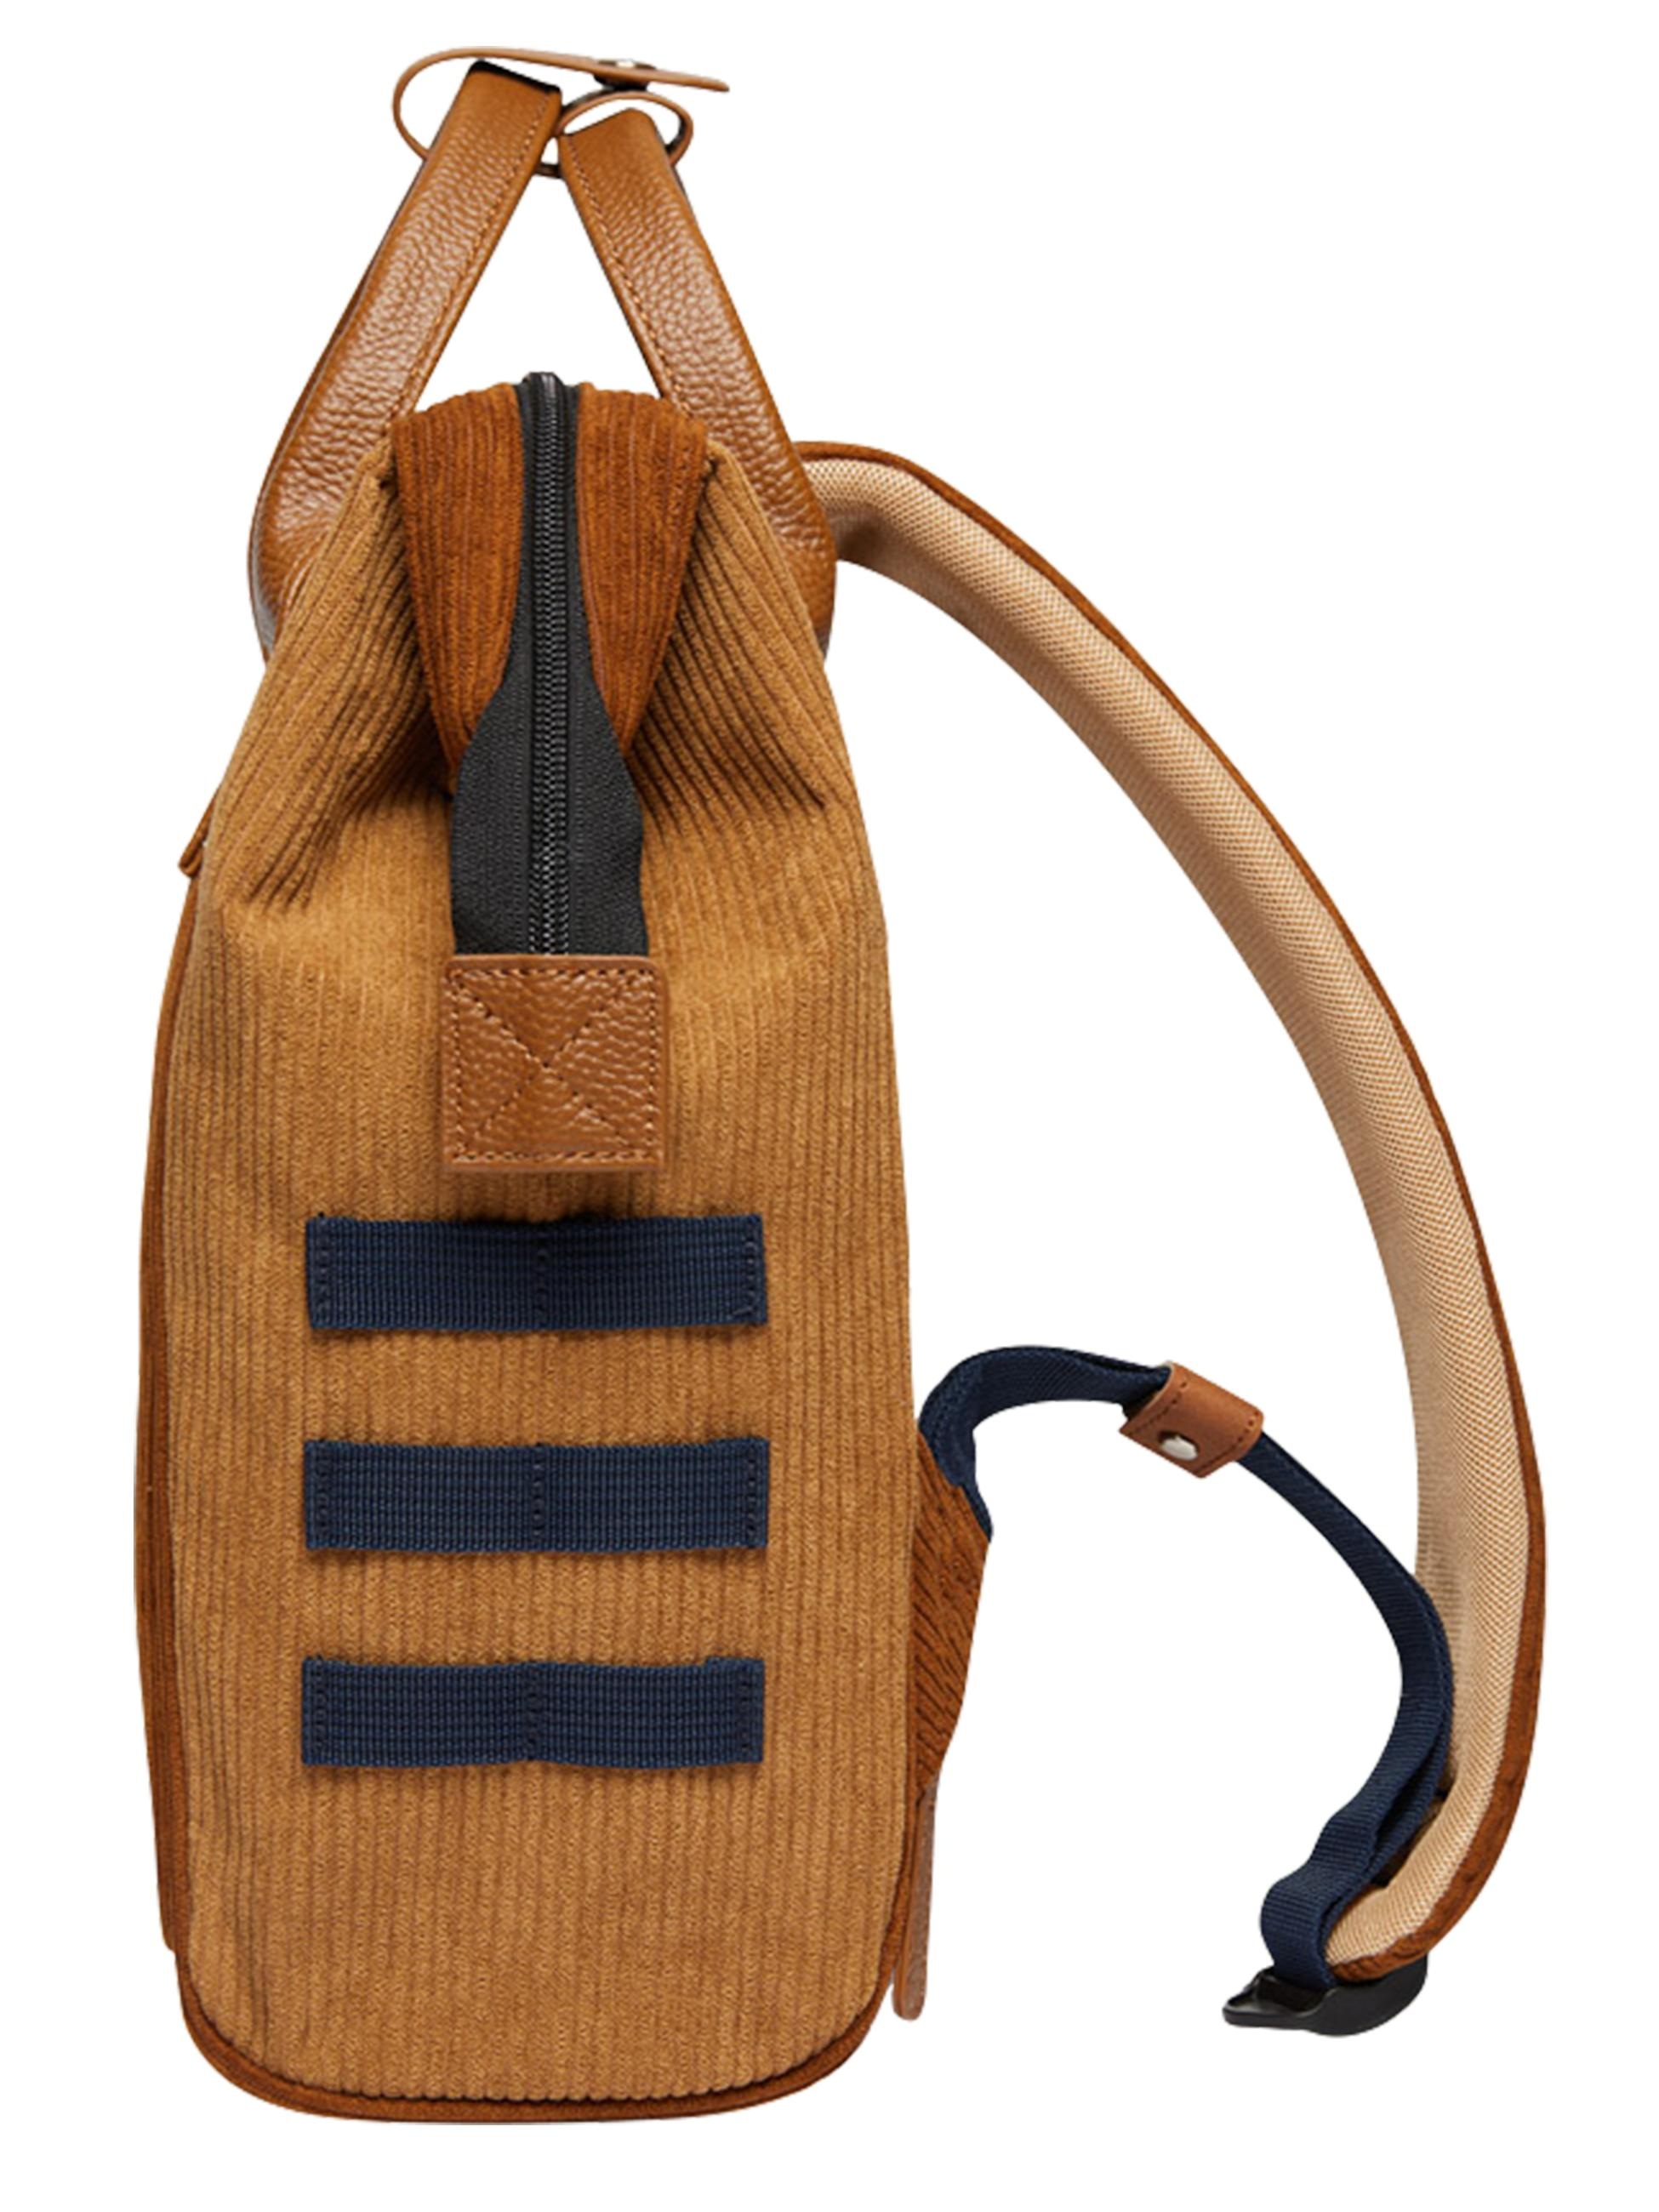 CABAIA Tagesrucksack »Tagesrucksack Adventurer S Cord Recycled«, Cord-Rucksack mit austauschbaren Vordertaschen